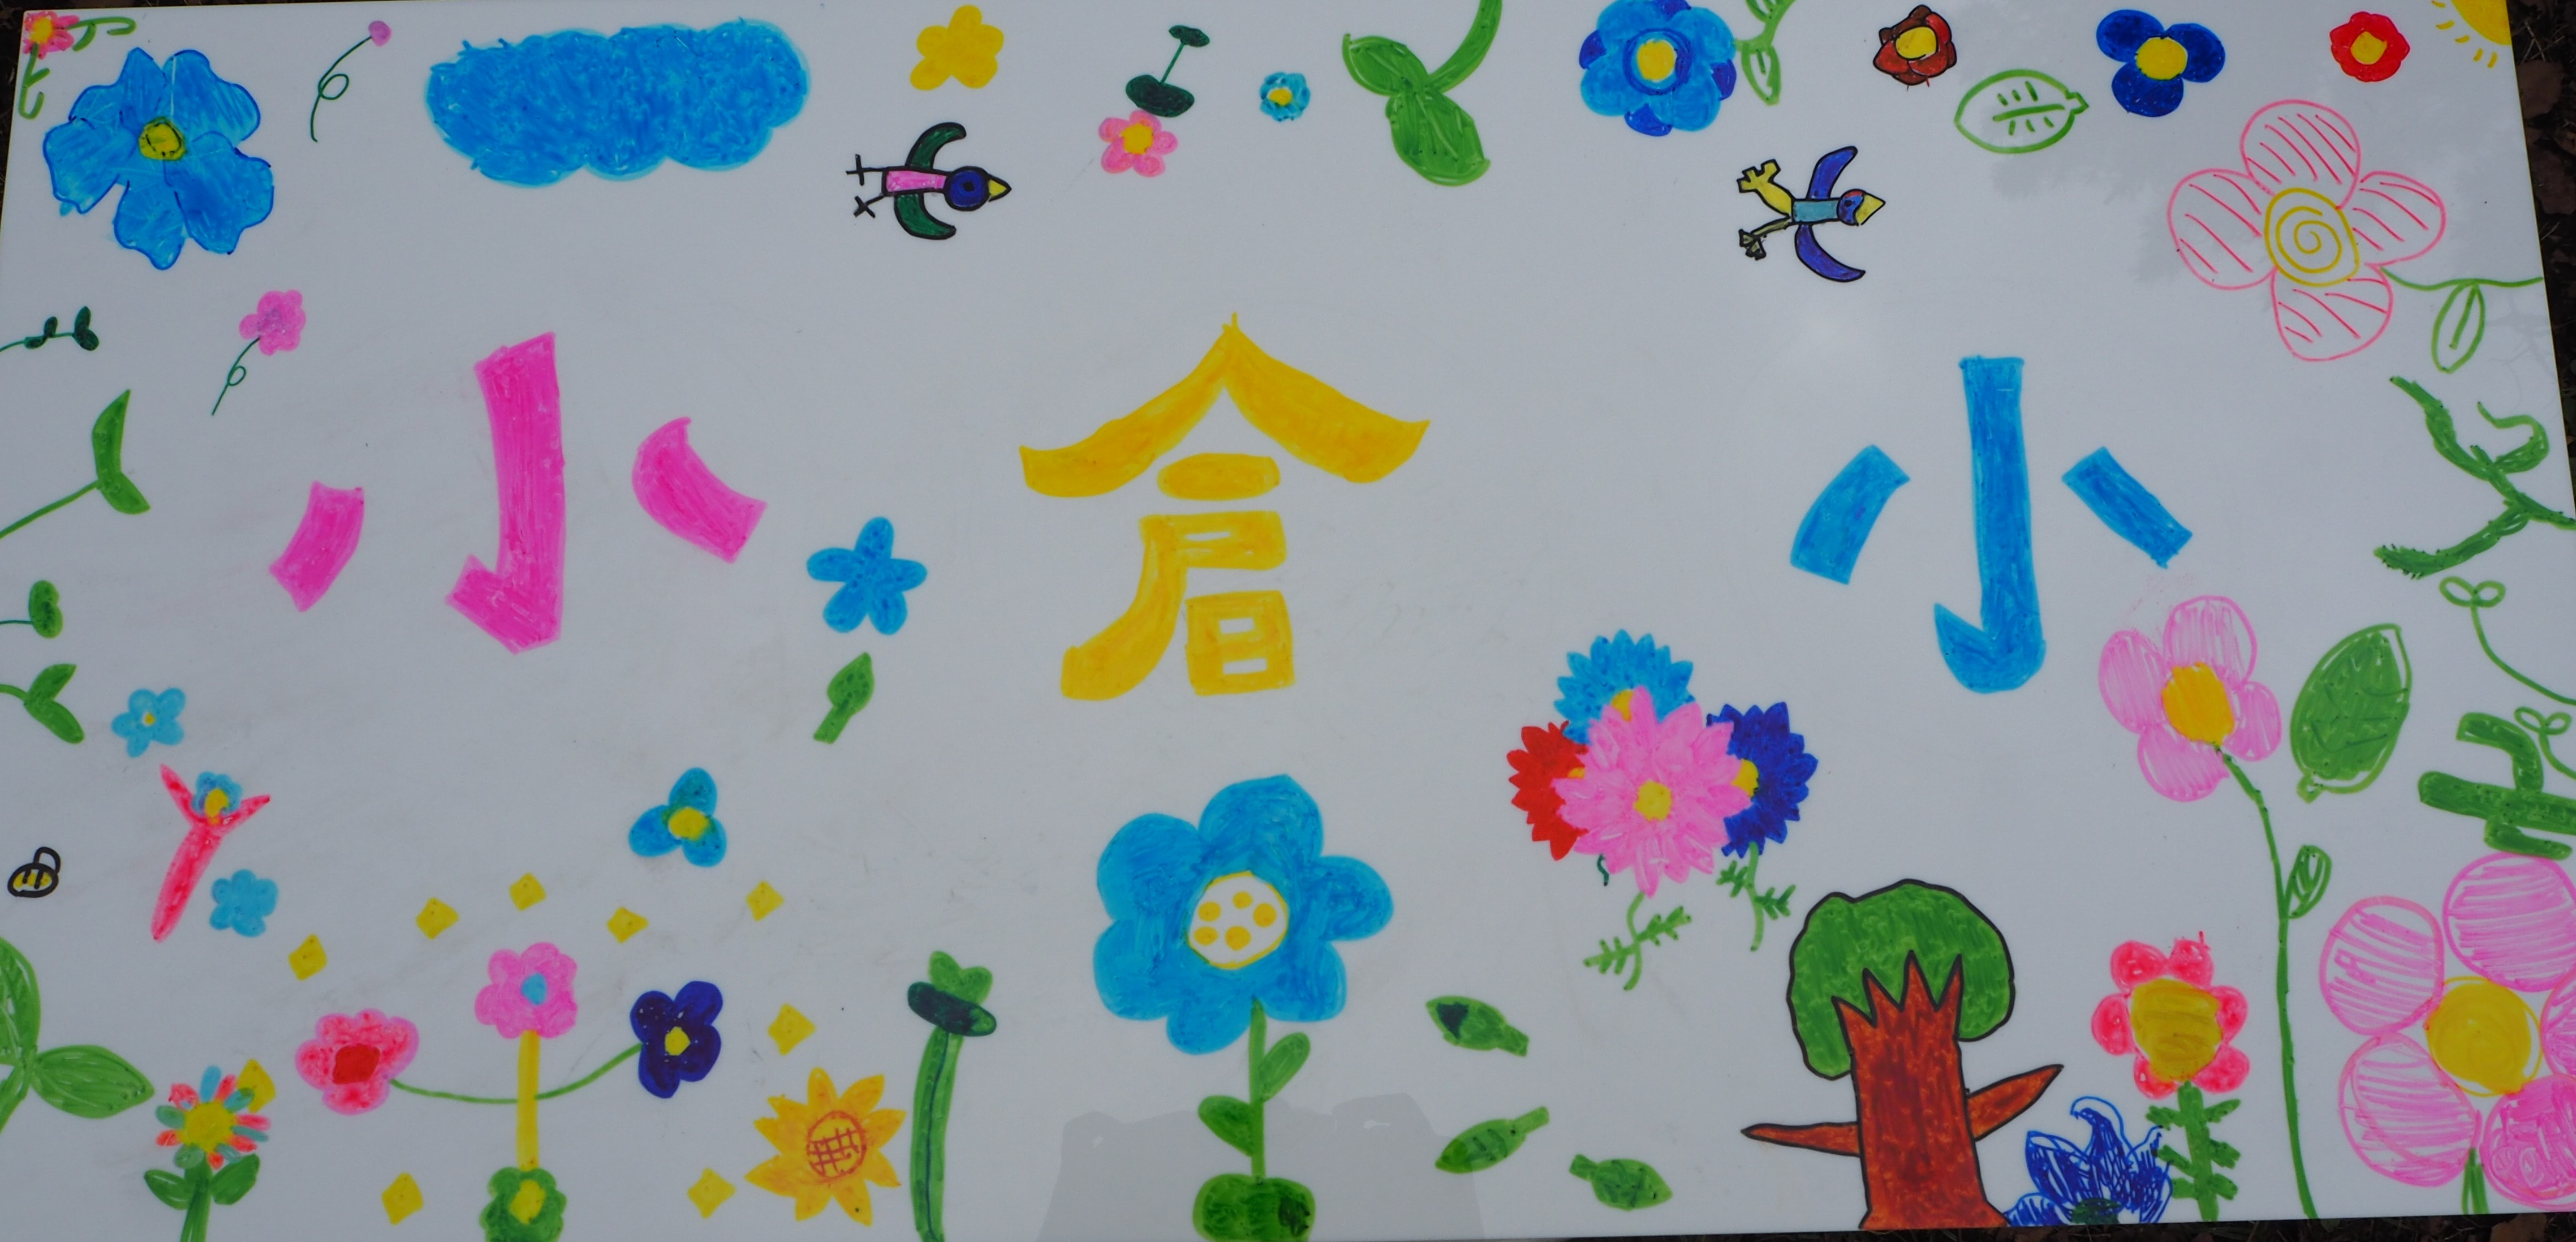 小倉小学校が作製した手描きオリジナル看板